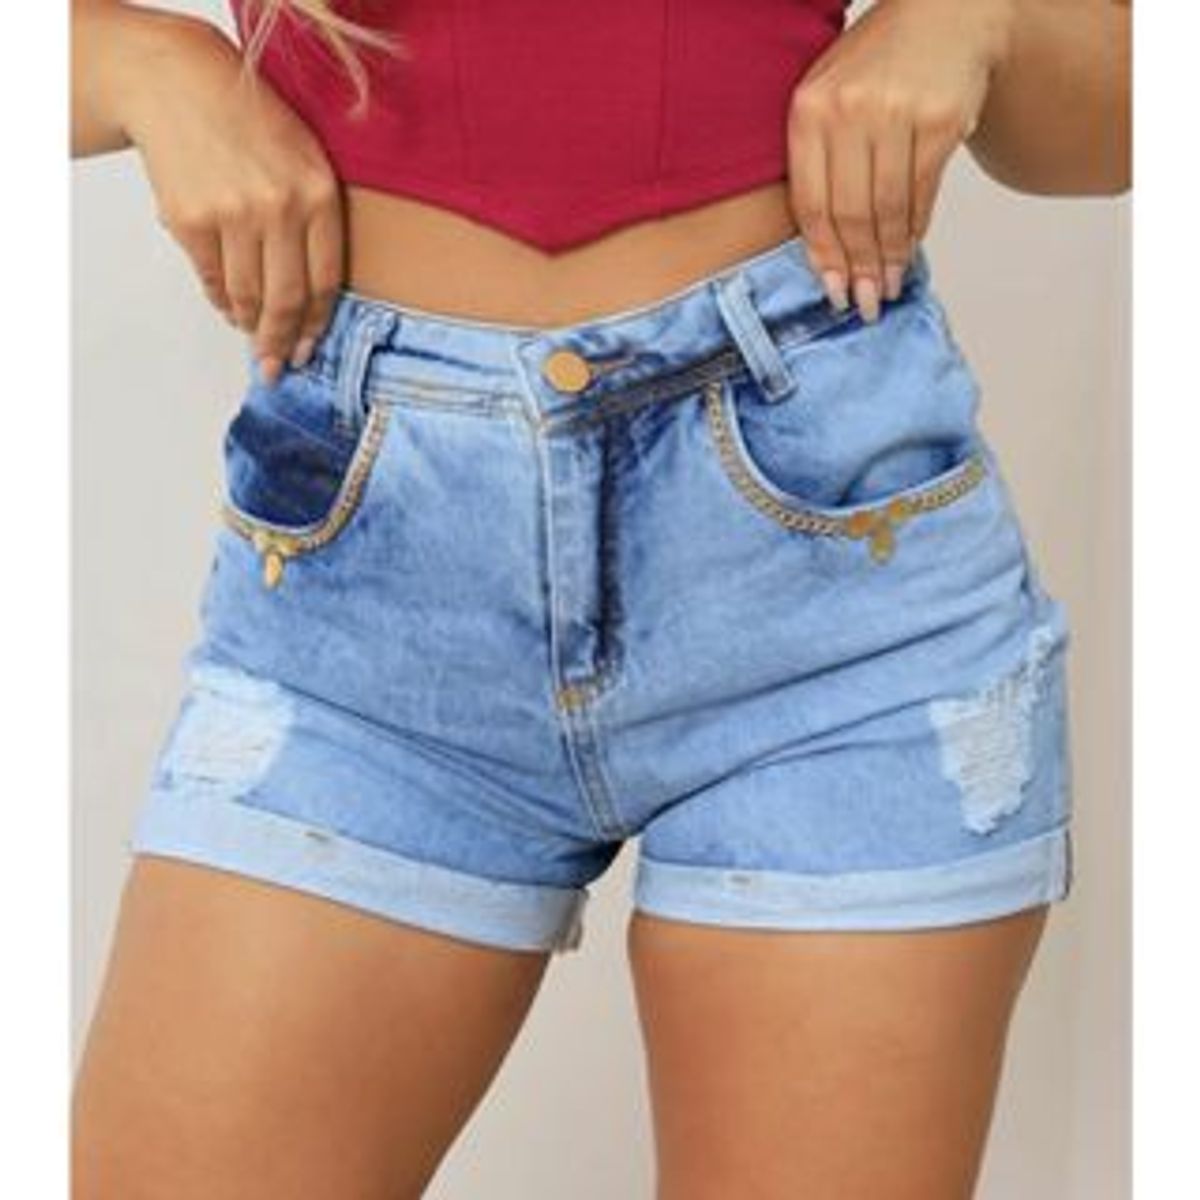 Shorts Hot Pants Jeans Feminino - 005.03.0089